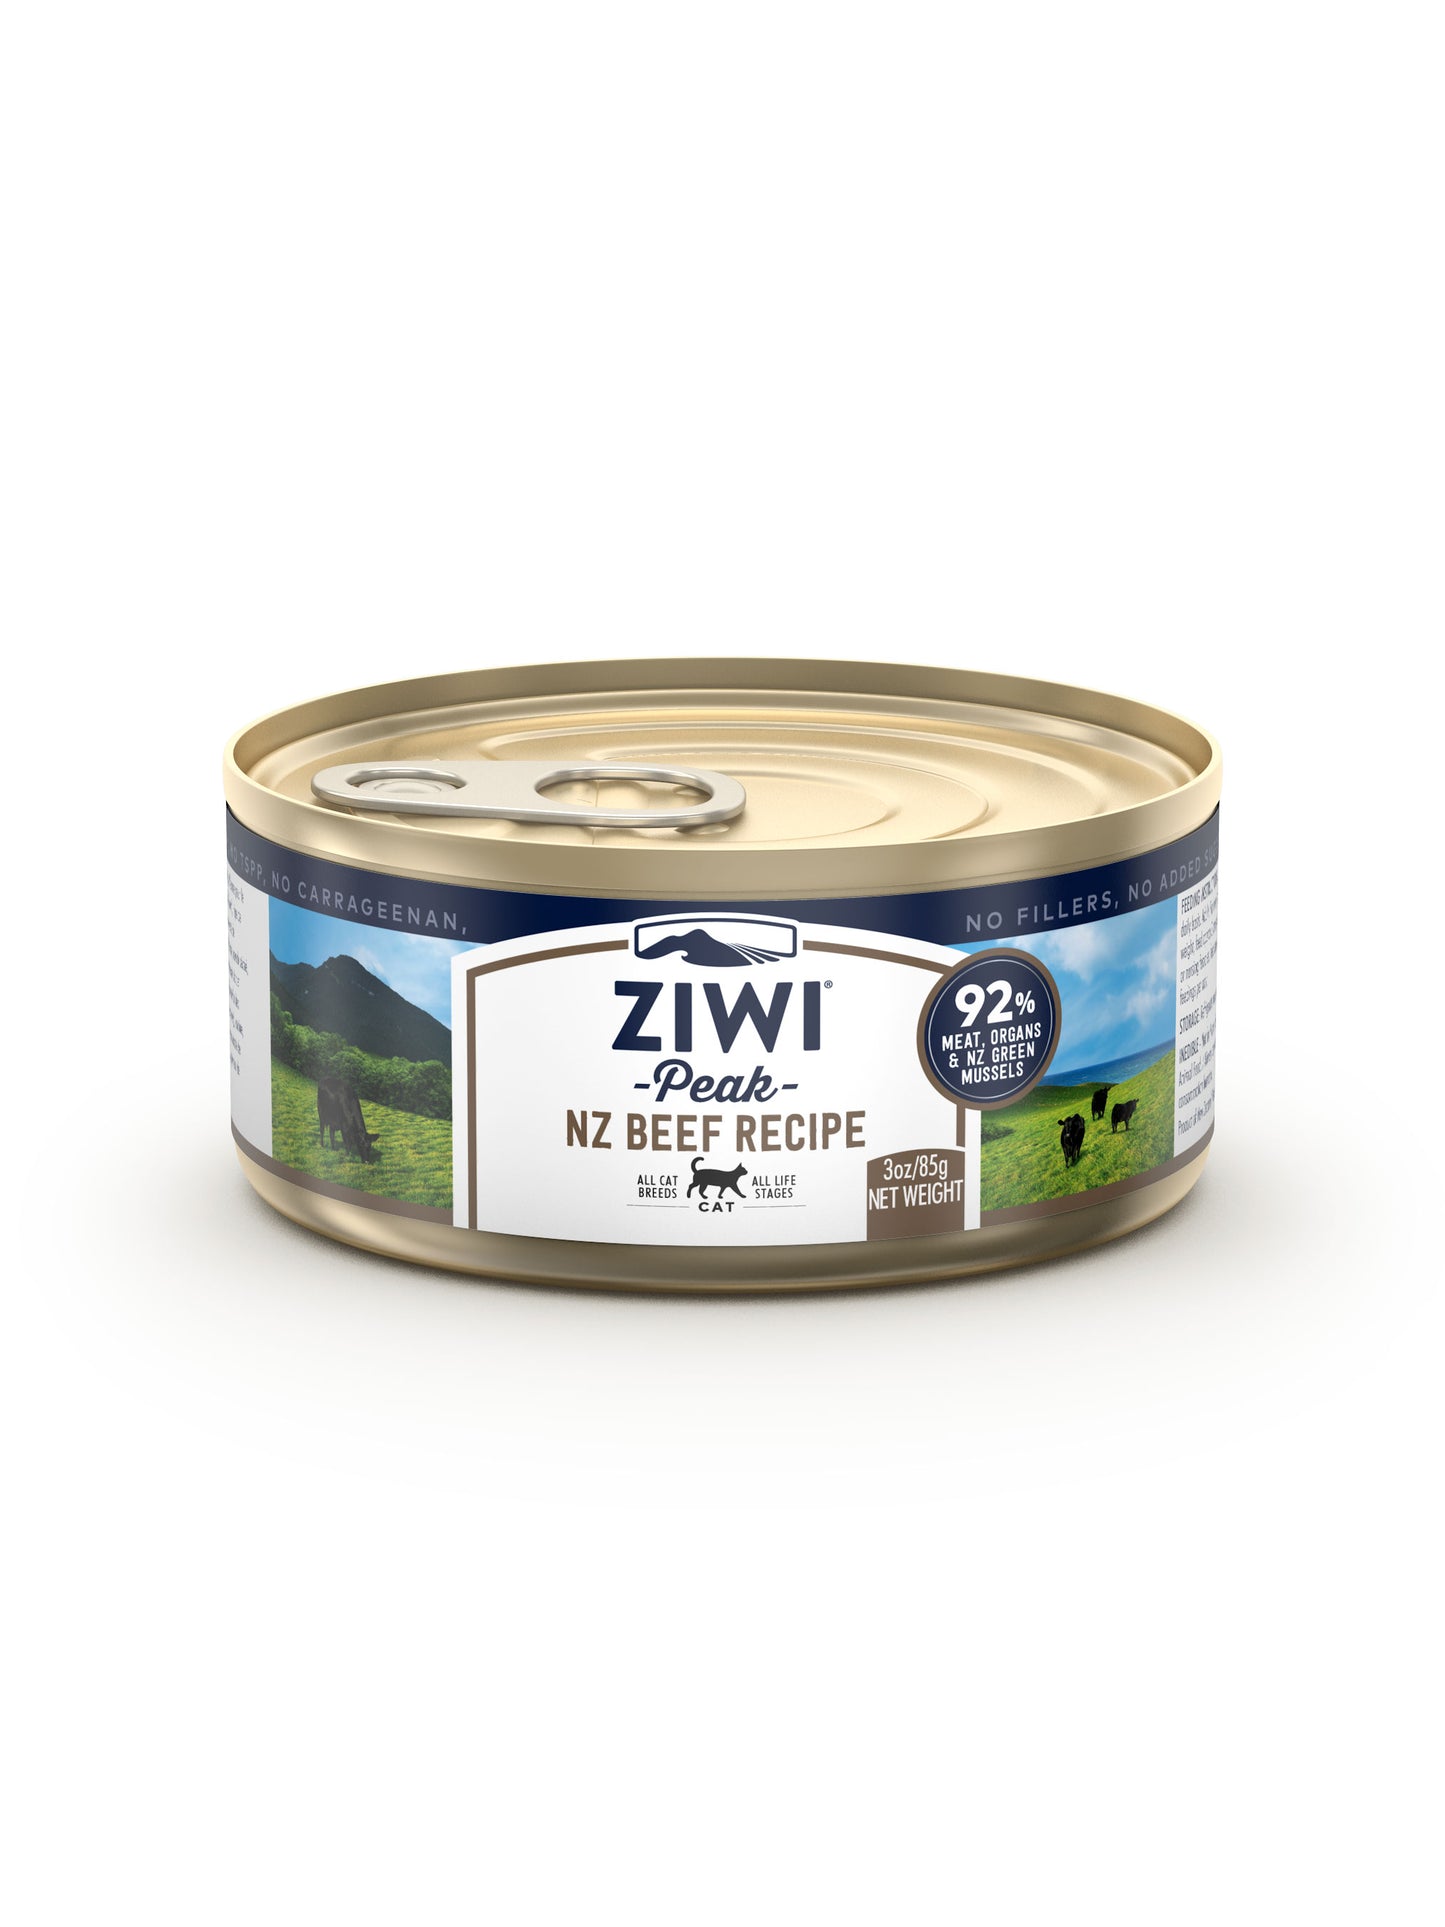 ZIWI® Peak Wet Beef Recipe